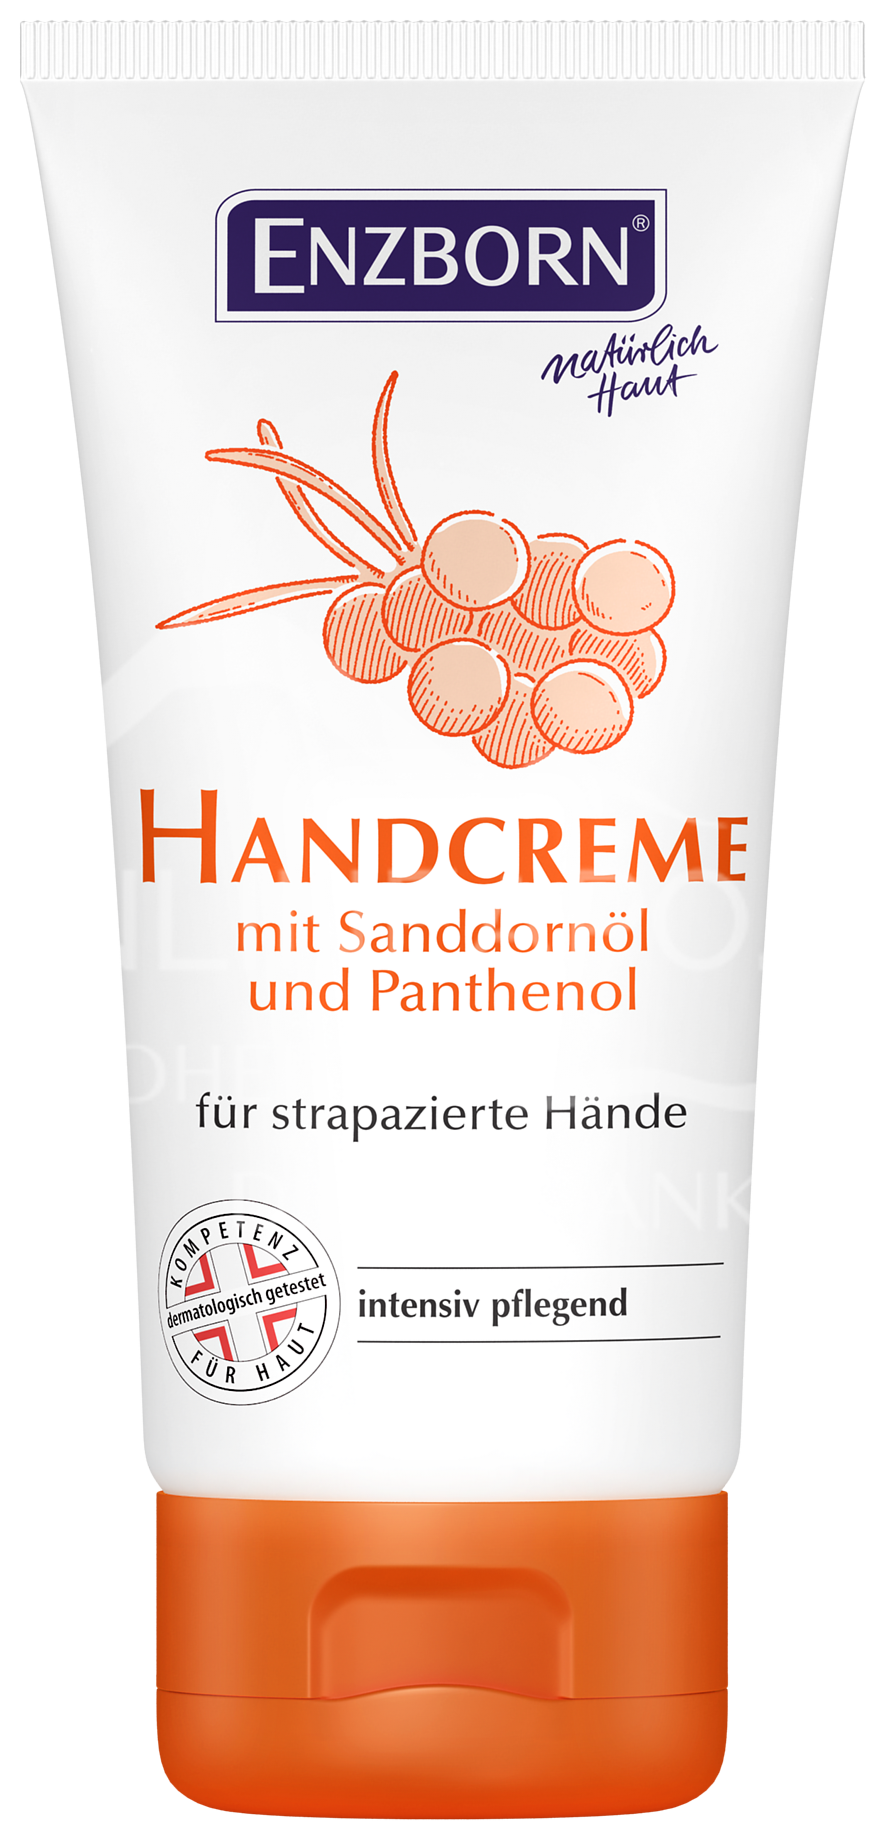 Enzborn Handcreme mit Sanddornöl